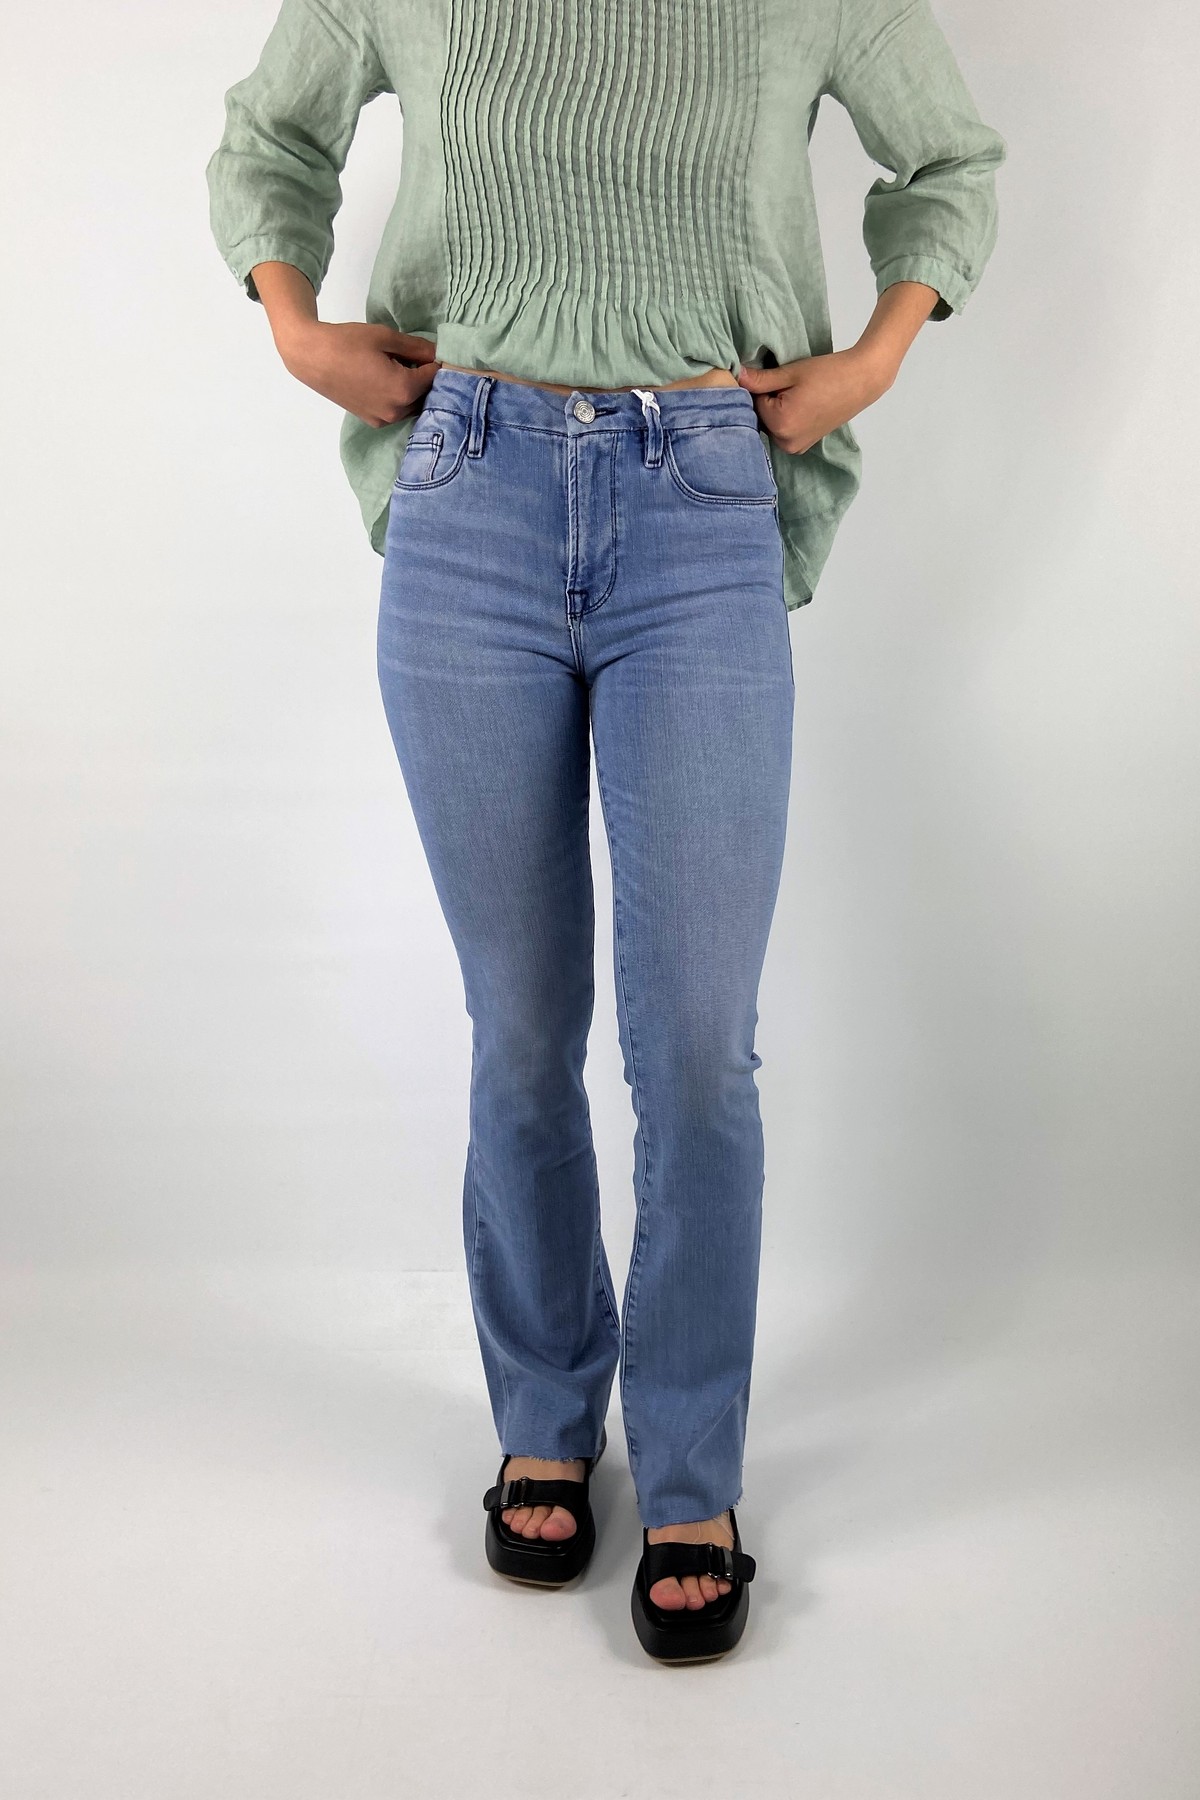 Jeans skinny in de kleur mediumblue van het merk Frame